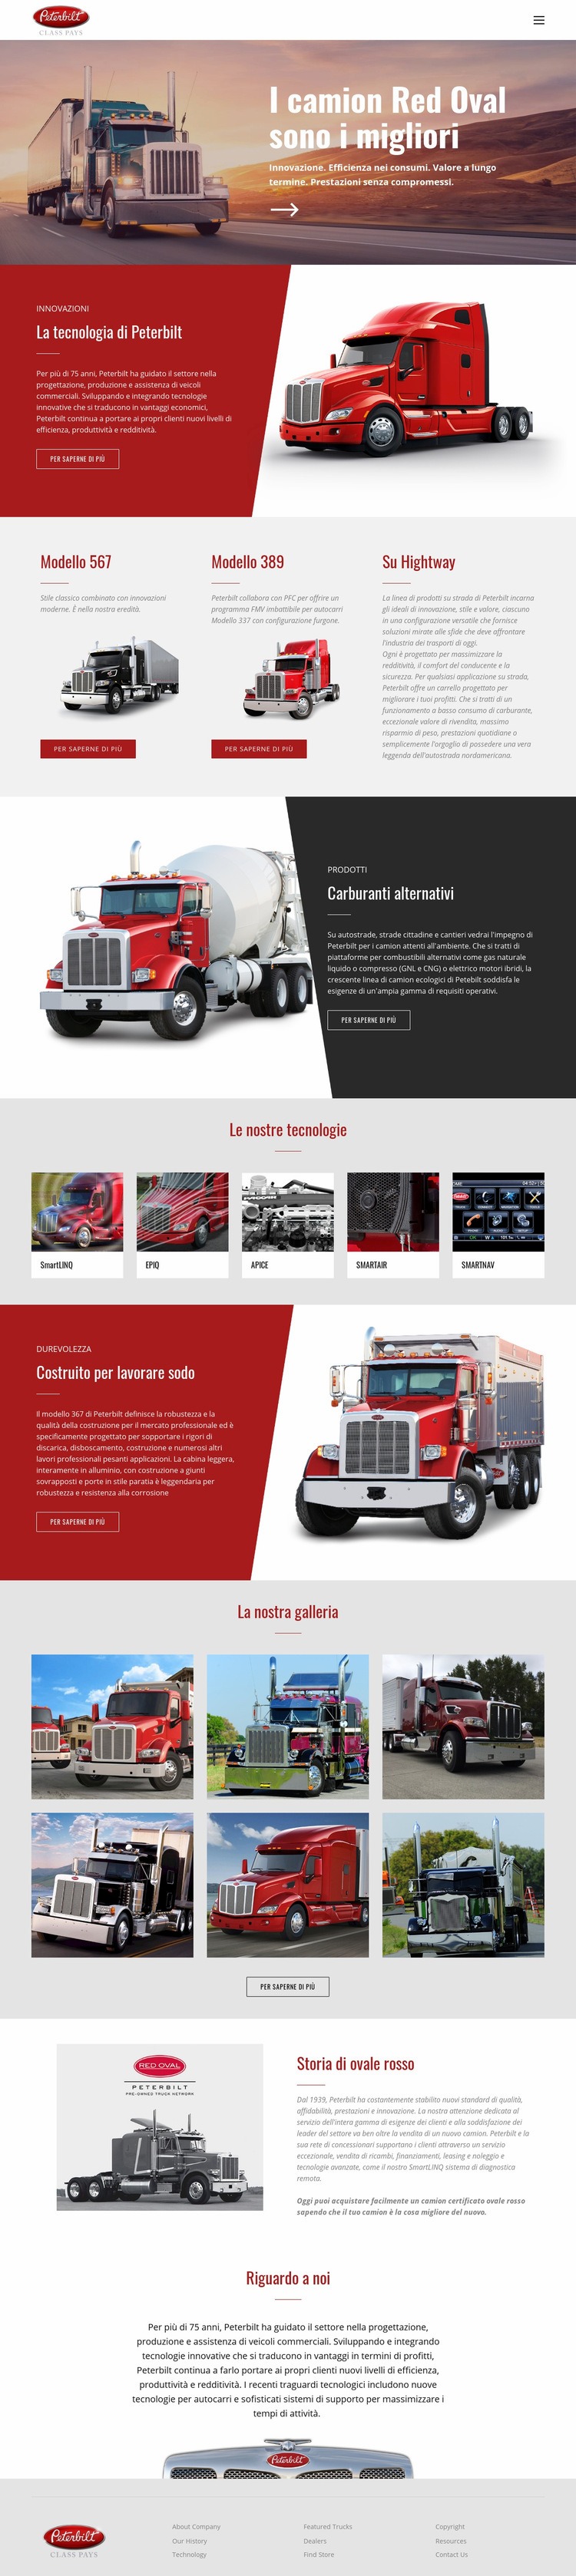 Trasporta camion ovale rosso Mockup del sito web